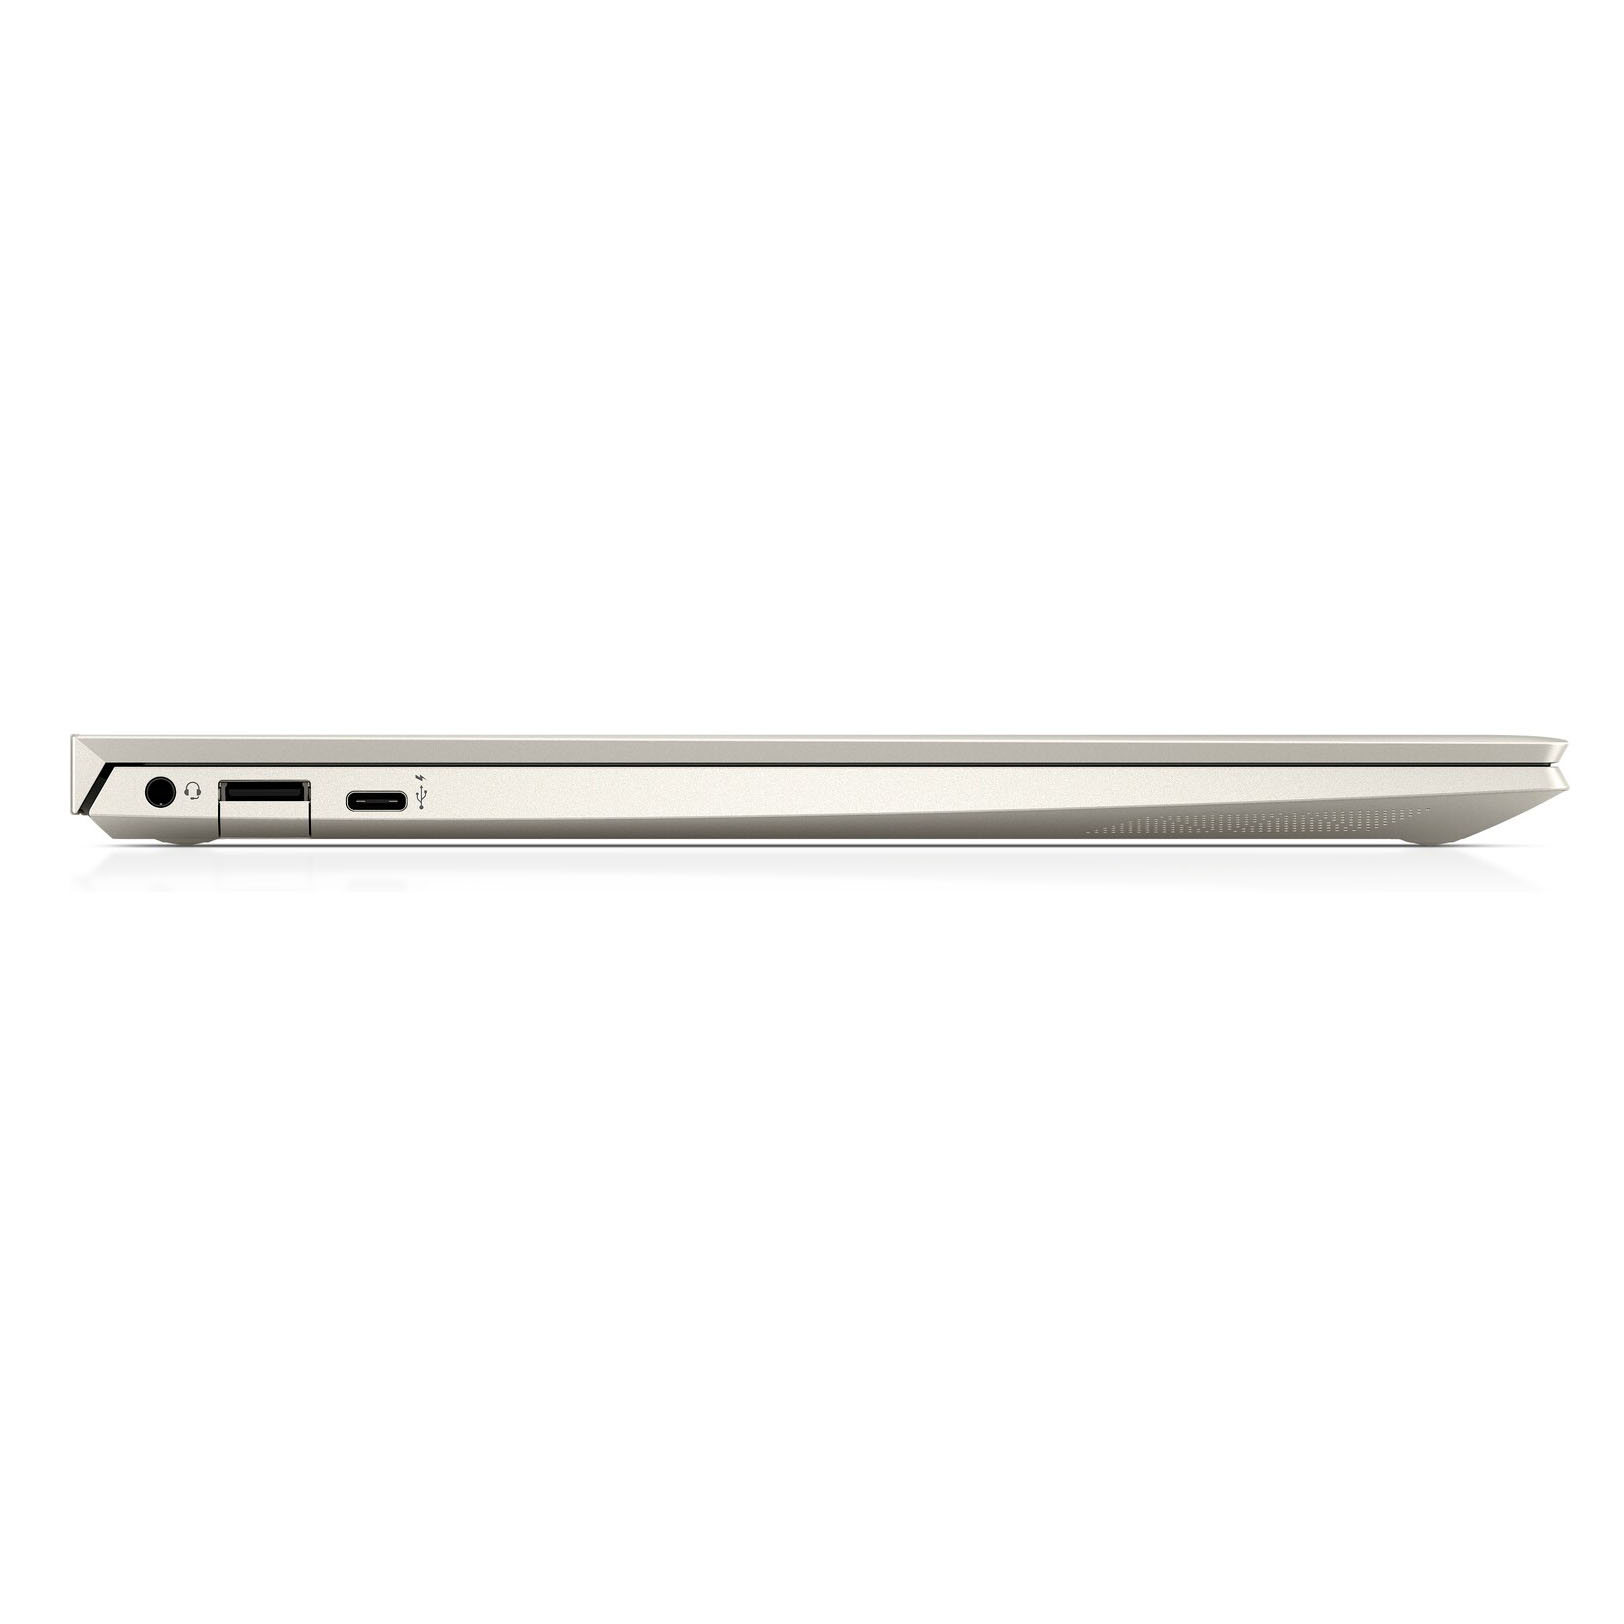 Laptop HP Envy 13 AQ1021TU (i5 10210U/8GB RAM/256GB SSD/13.3 inch FHD/FP/Win 10/Vàng) - 8QN79PA